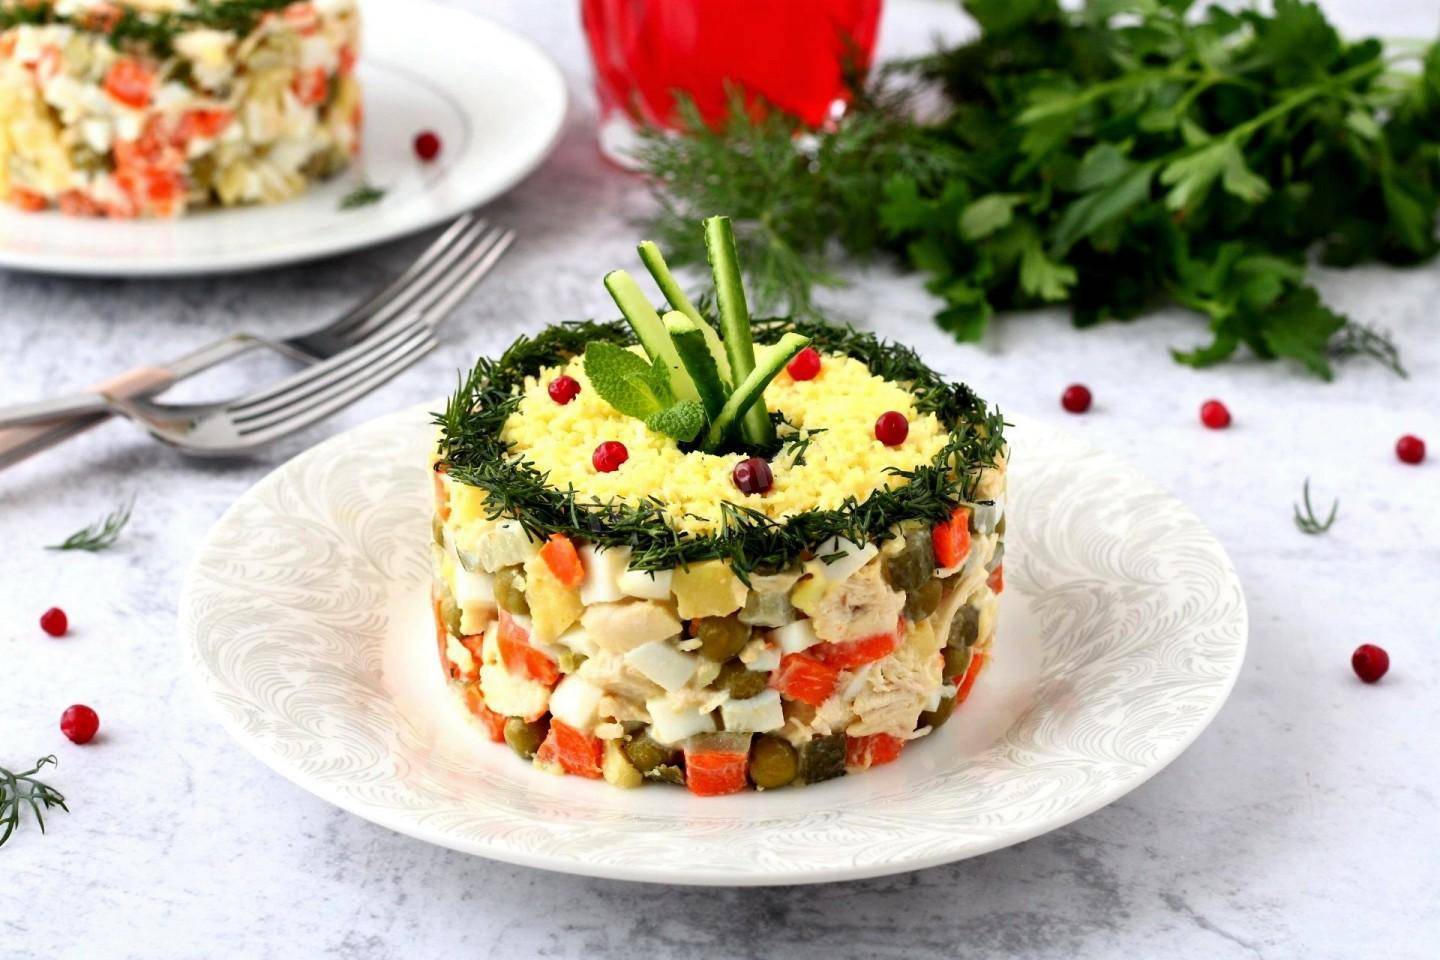 Как украсить оливье к праздничному столу / новый образ любимого салата – статья из рубрики "что съесть" на food.ru